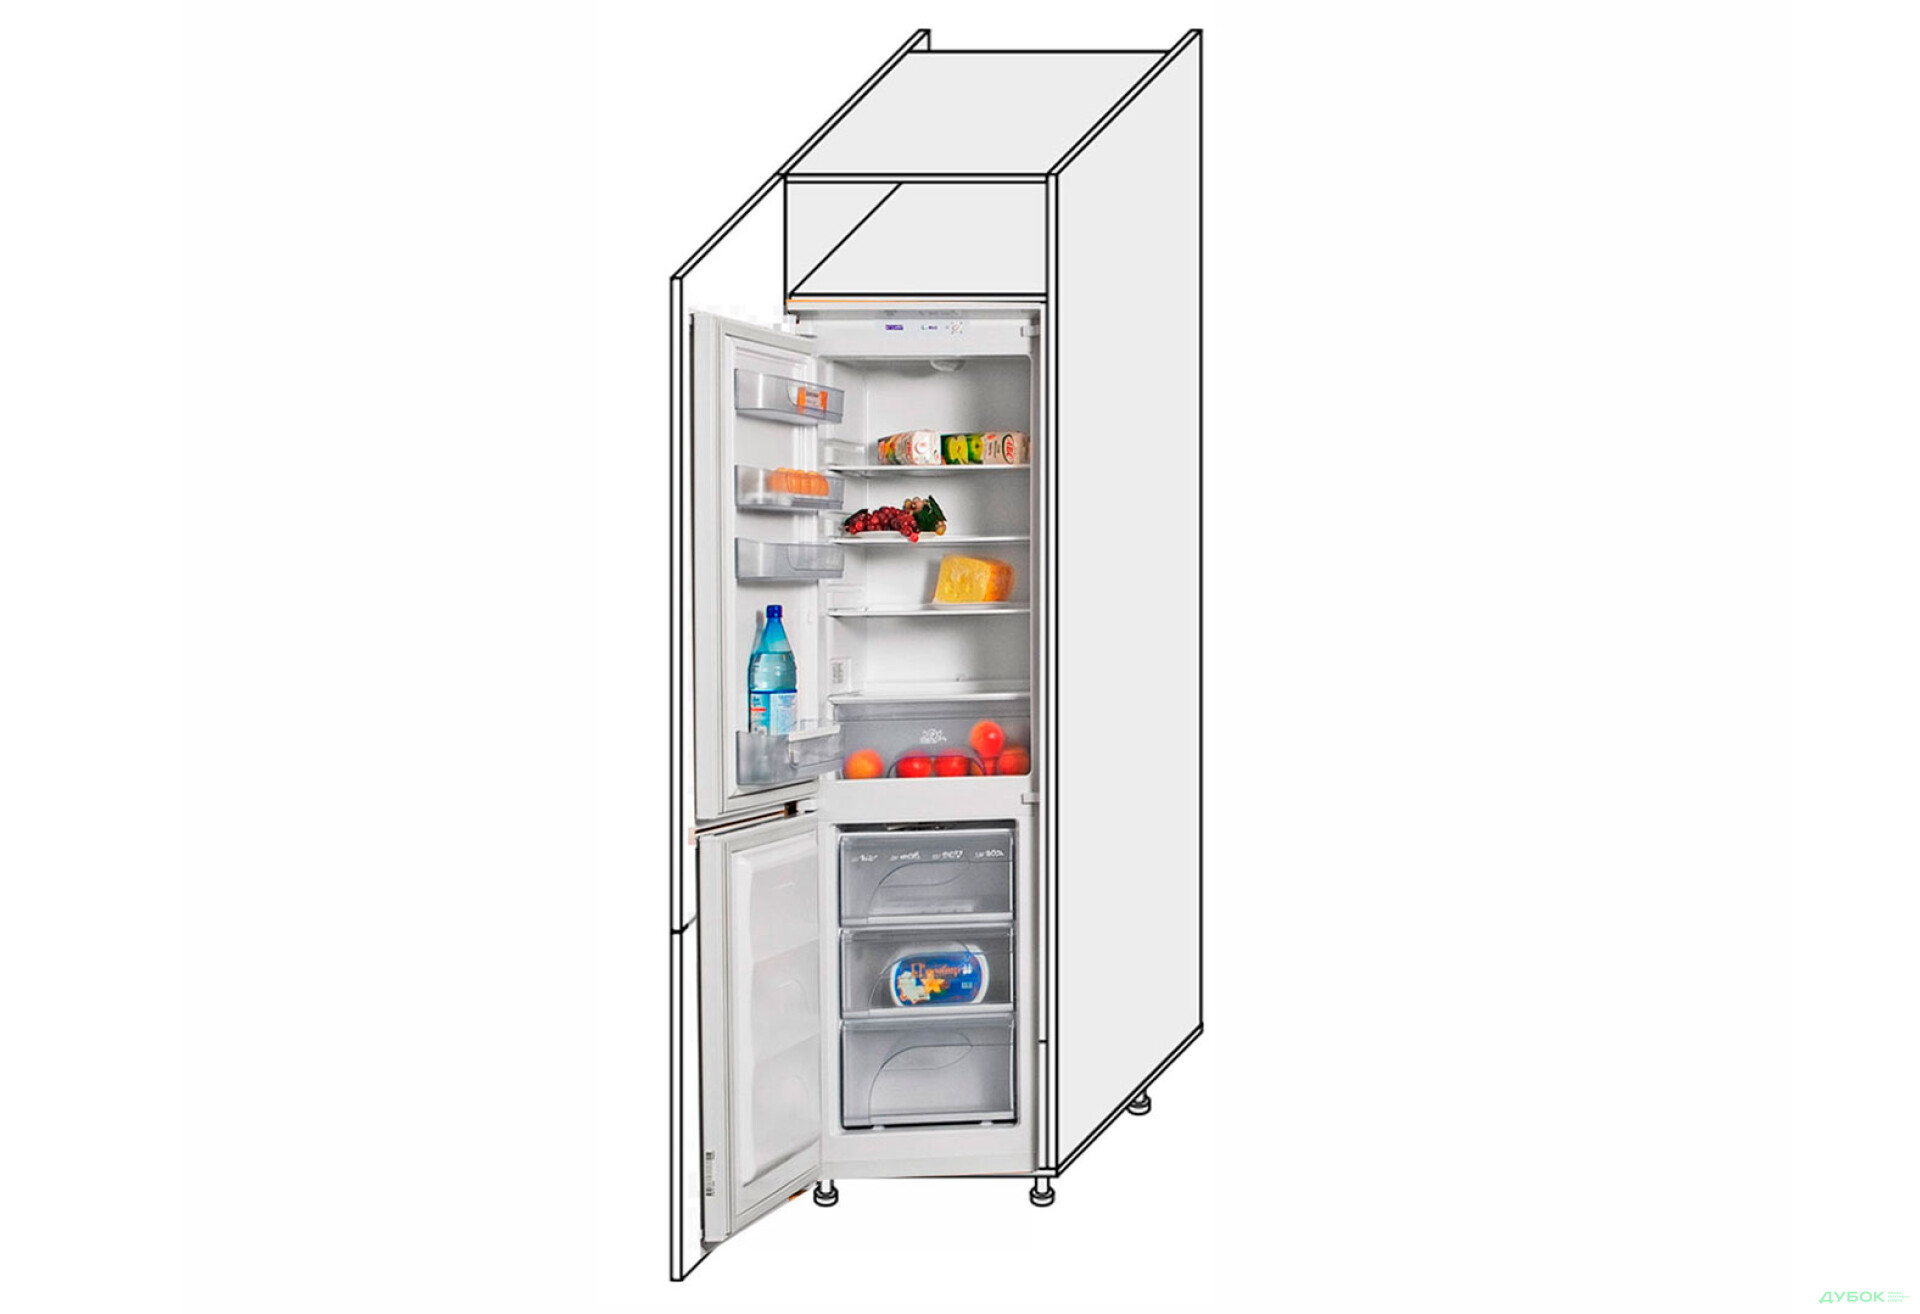 Фото 1 - Пенал 60ПХ/2140 холодильник Pro Blum левый Миллениум / Millenium Premium МироМарк